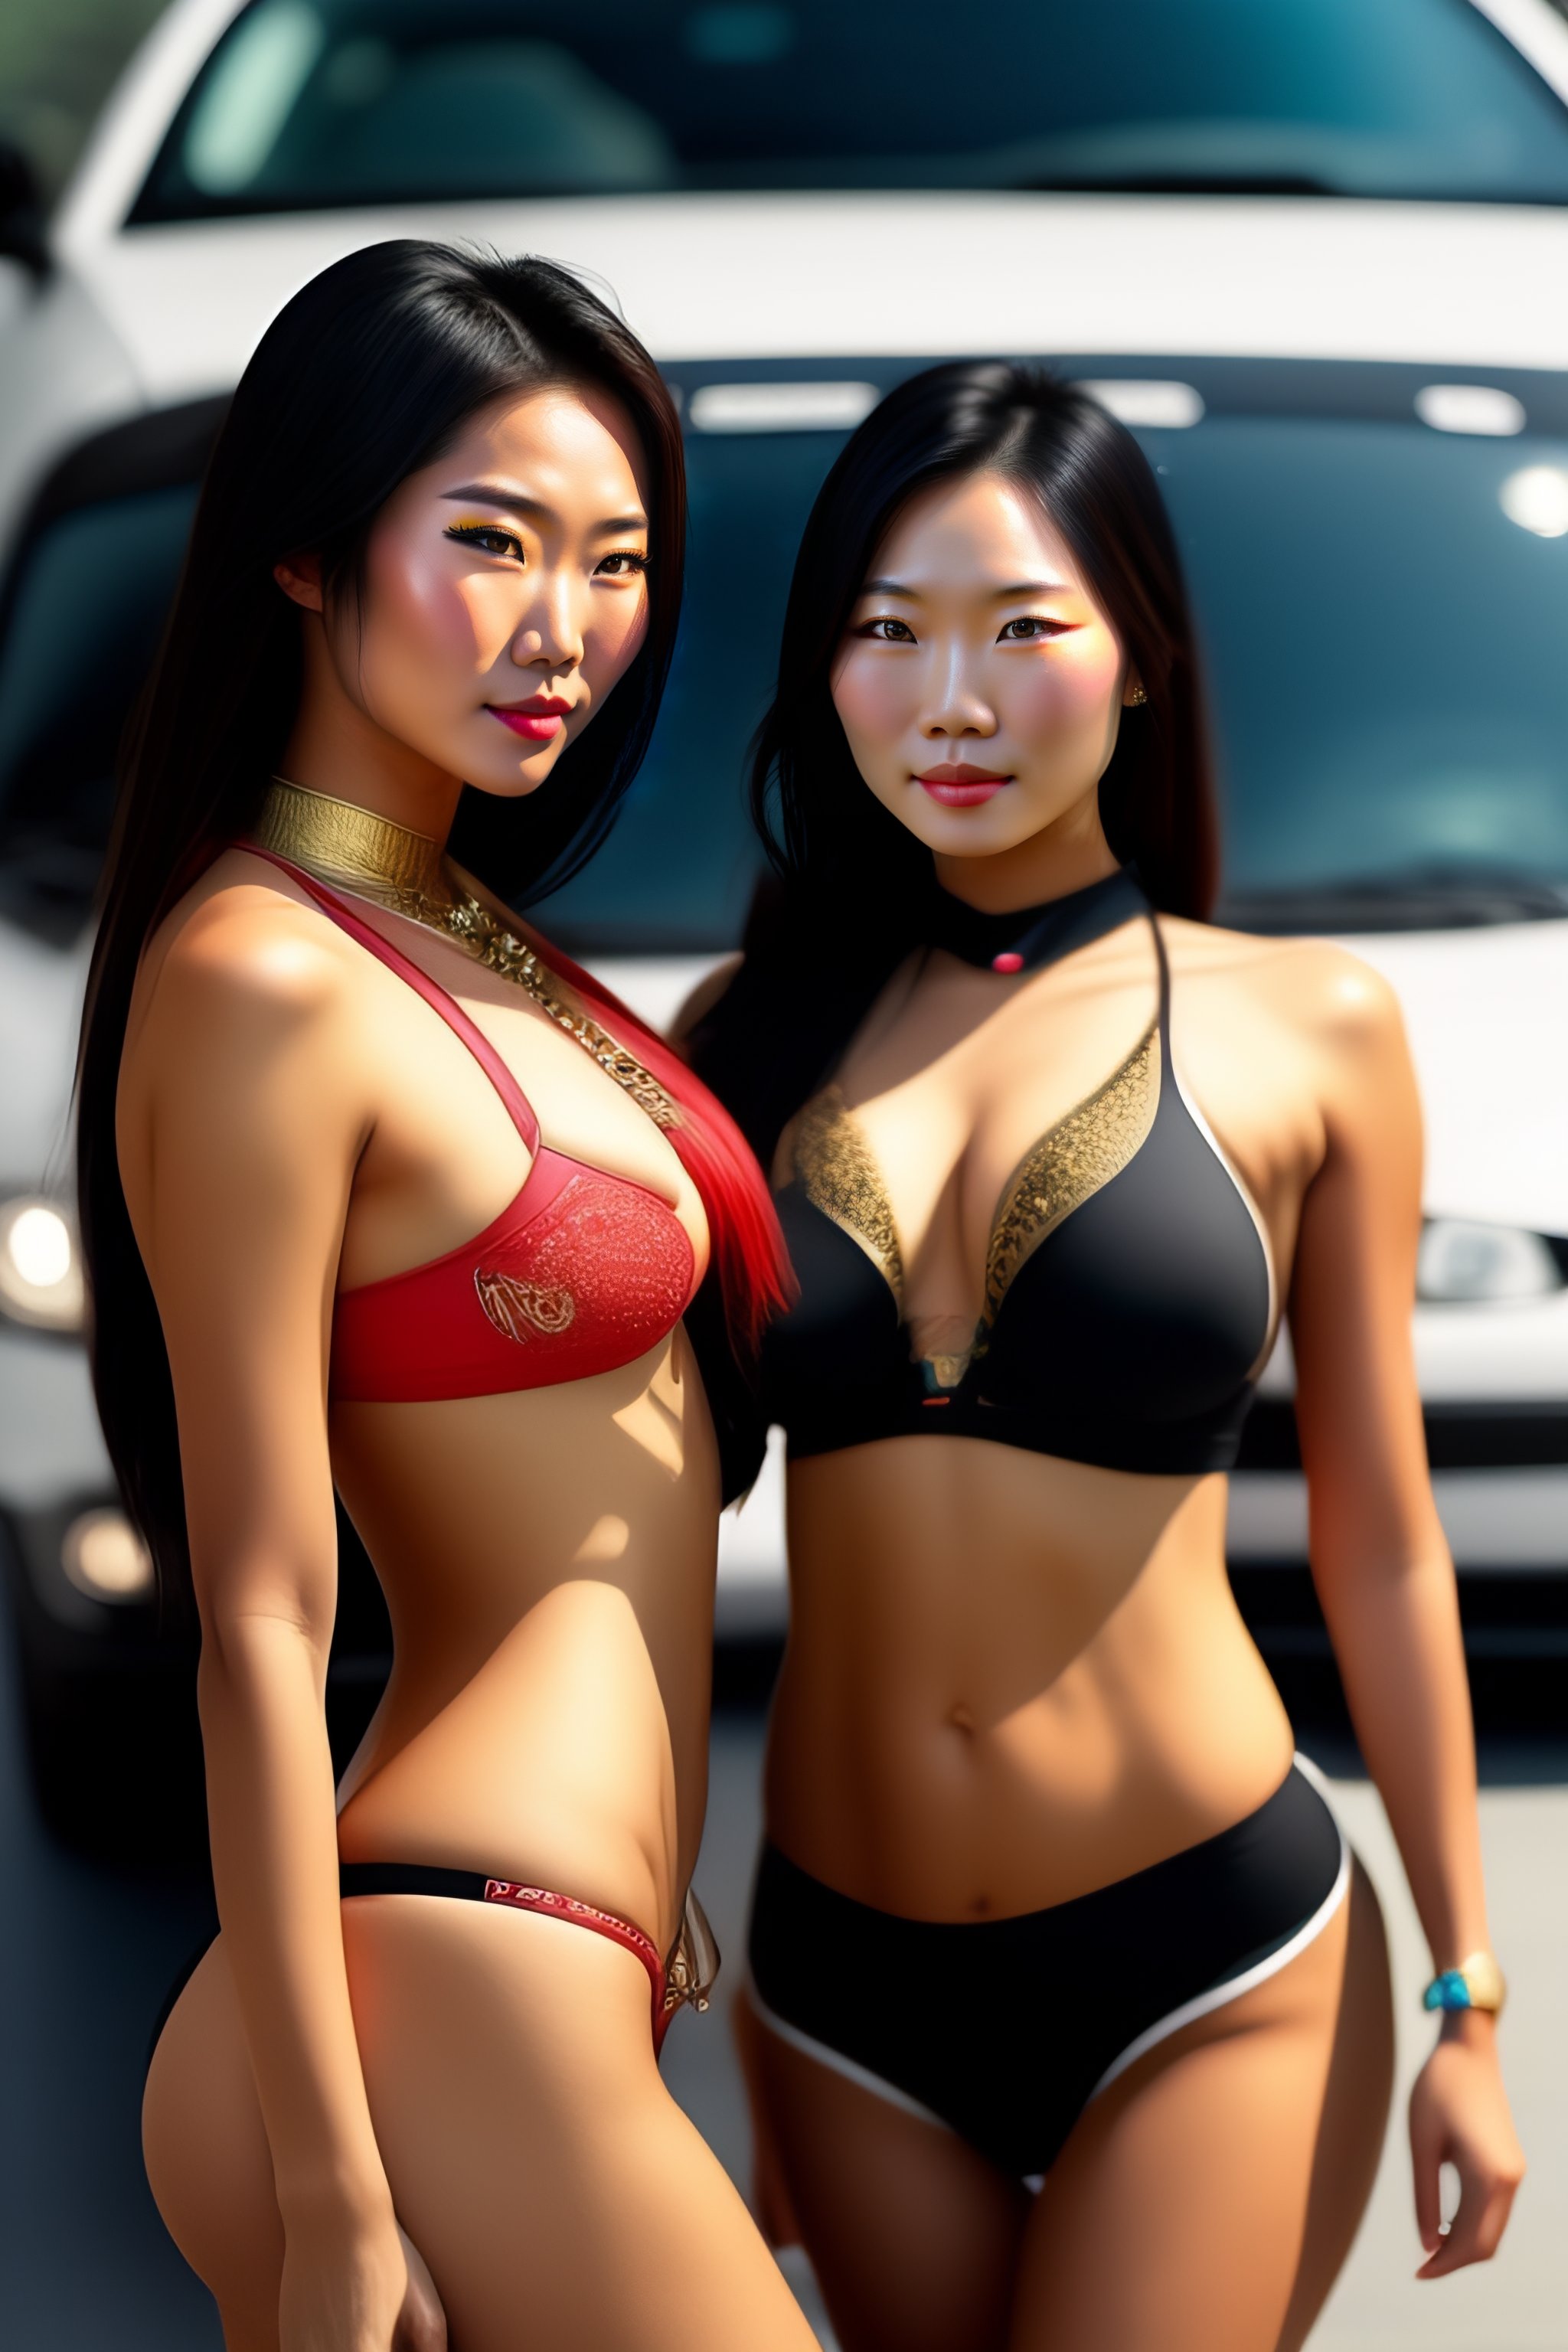 dimple mahajan recommends Hot Asians In Bikinis